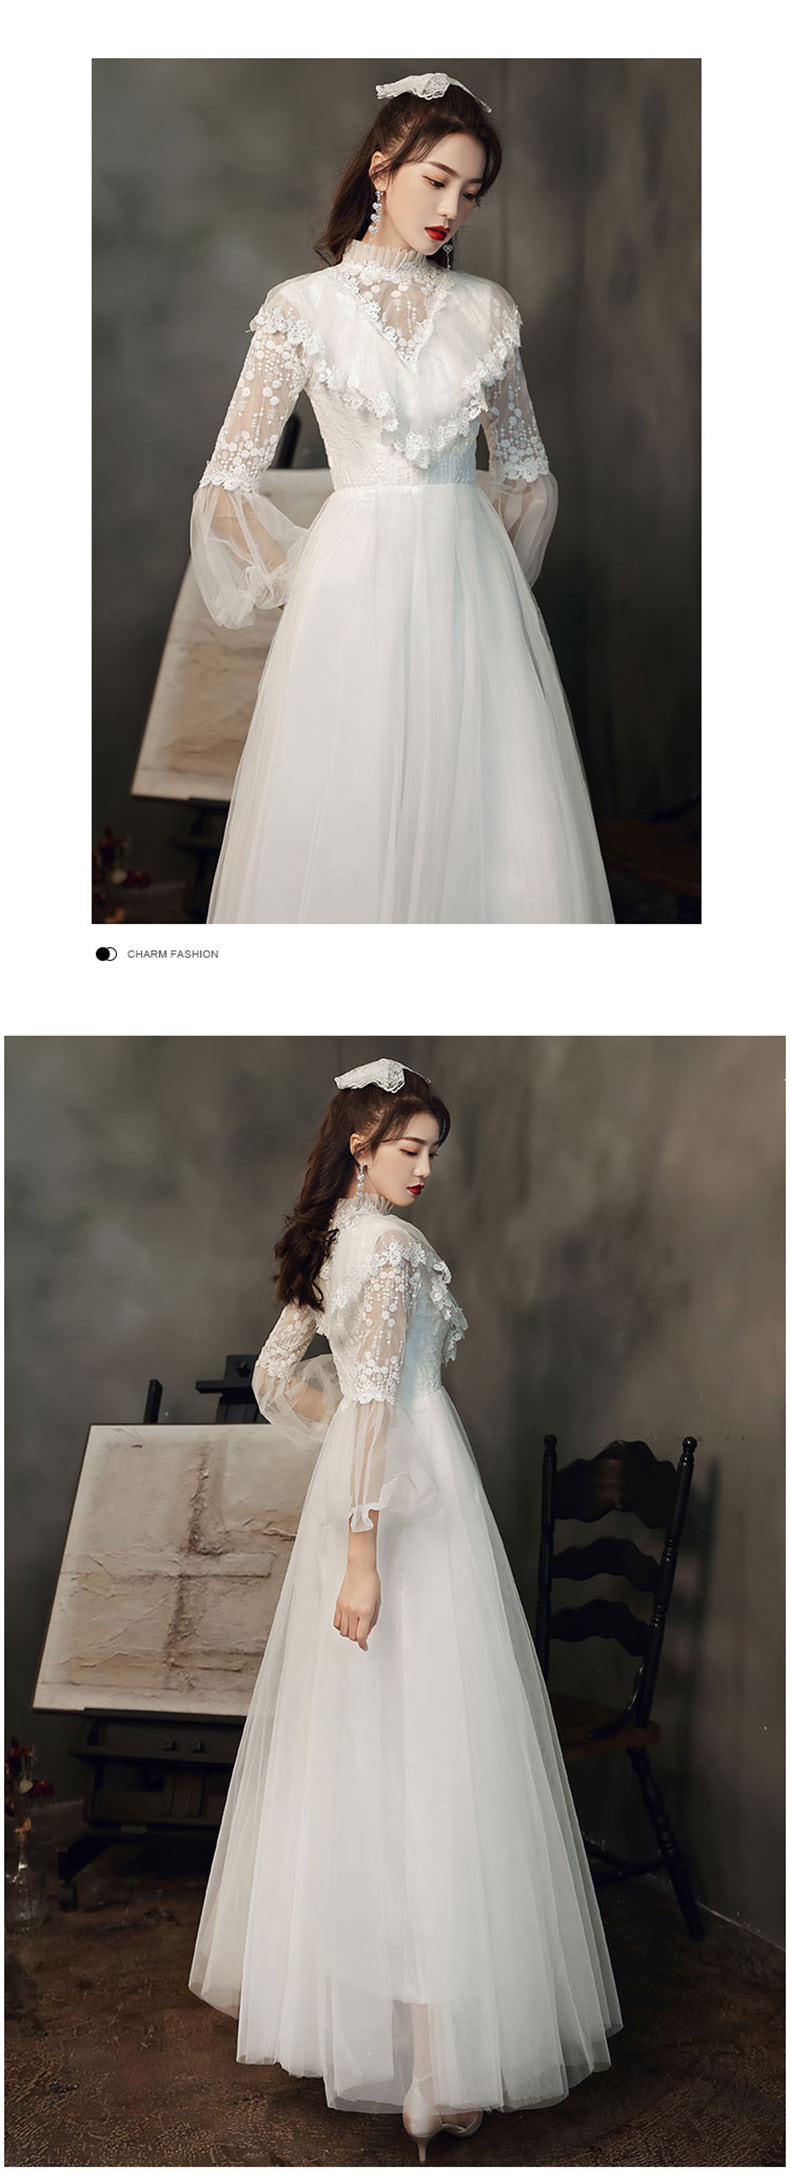 Elegant-Long-Sleeve-White-Maxi-Dress-Prom-Dance-Ball-Gown13.jpg